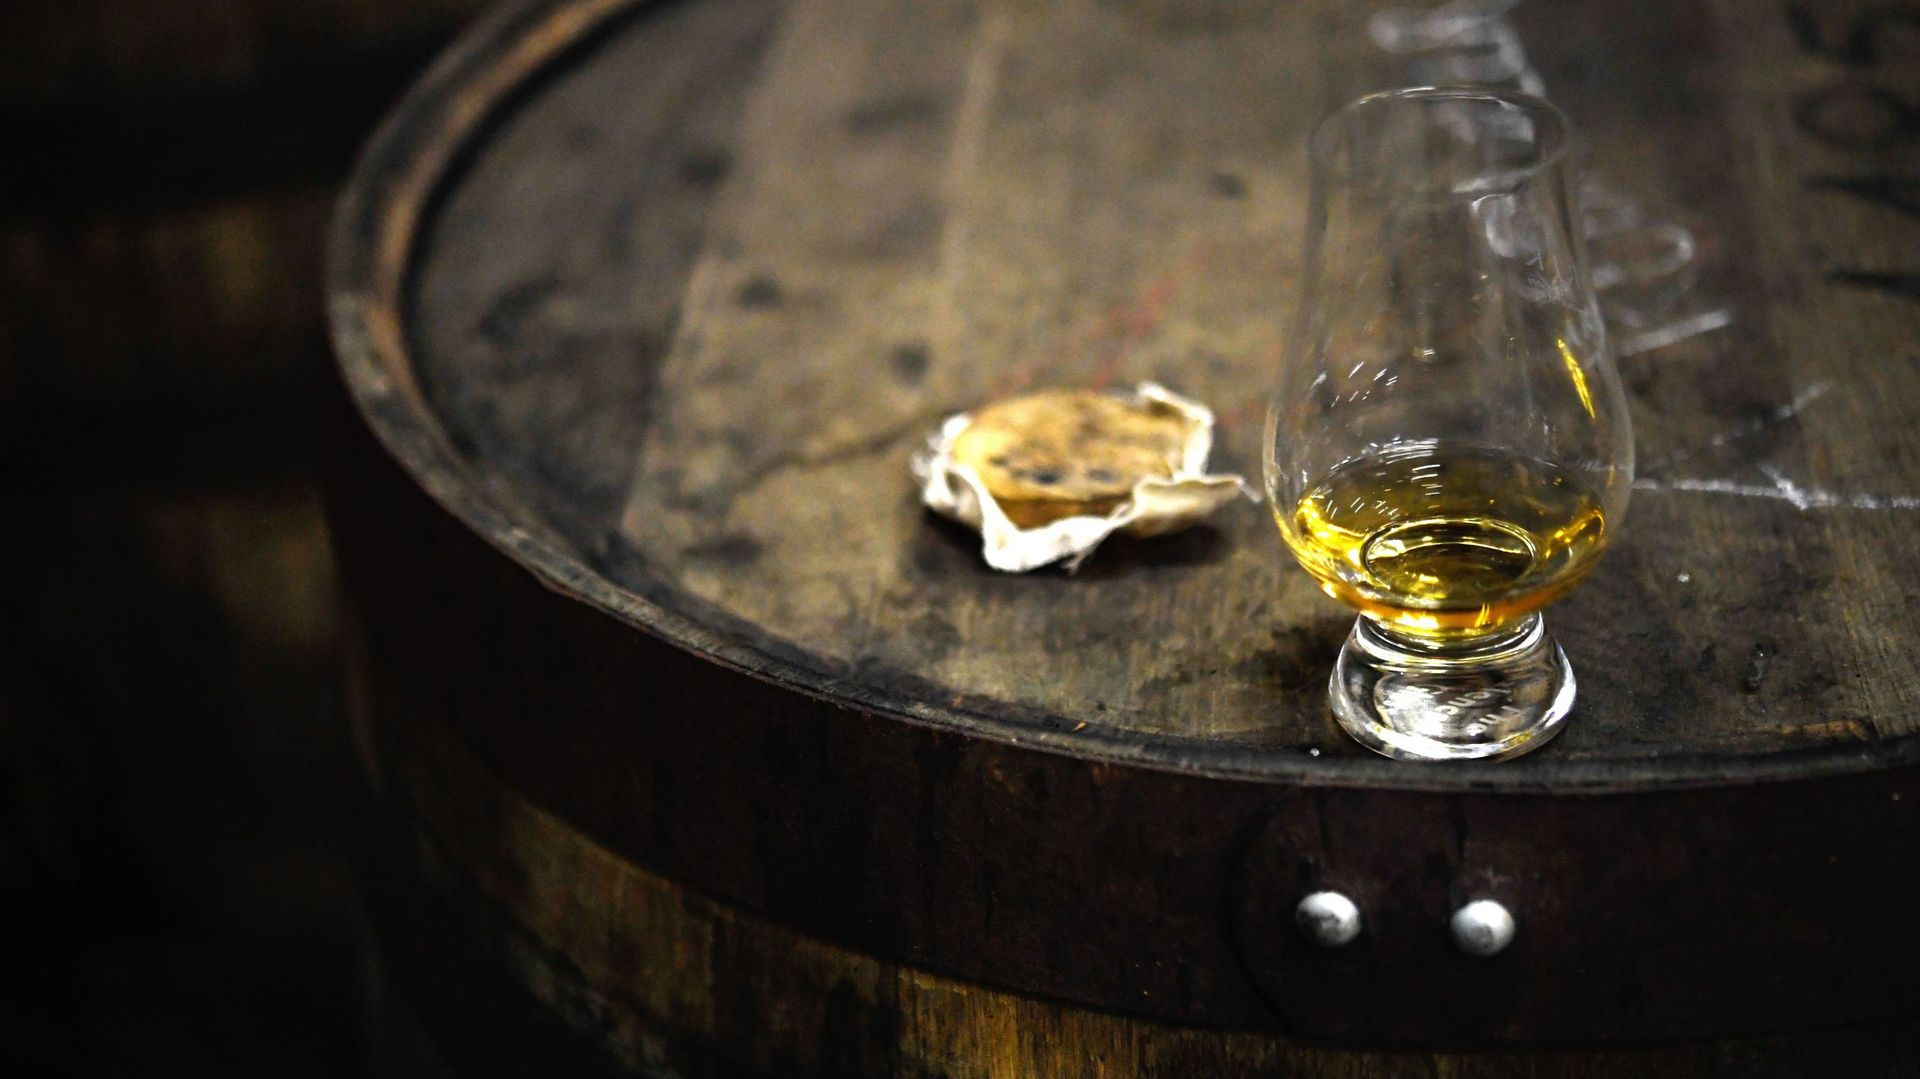 Un tiers des whisky rares ou anciens sont faux selon des scientifiques écossais